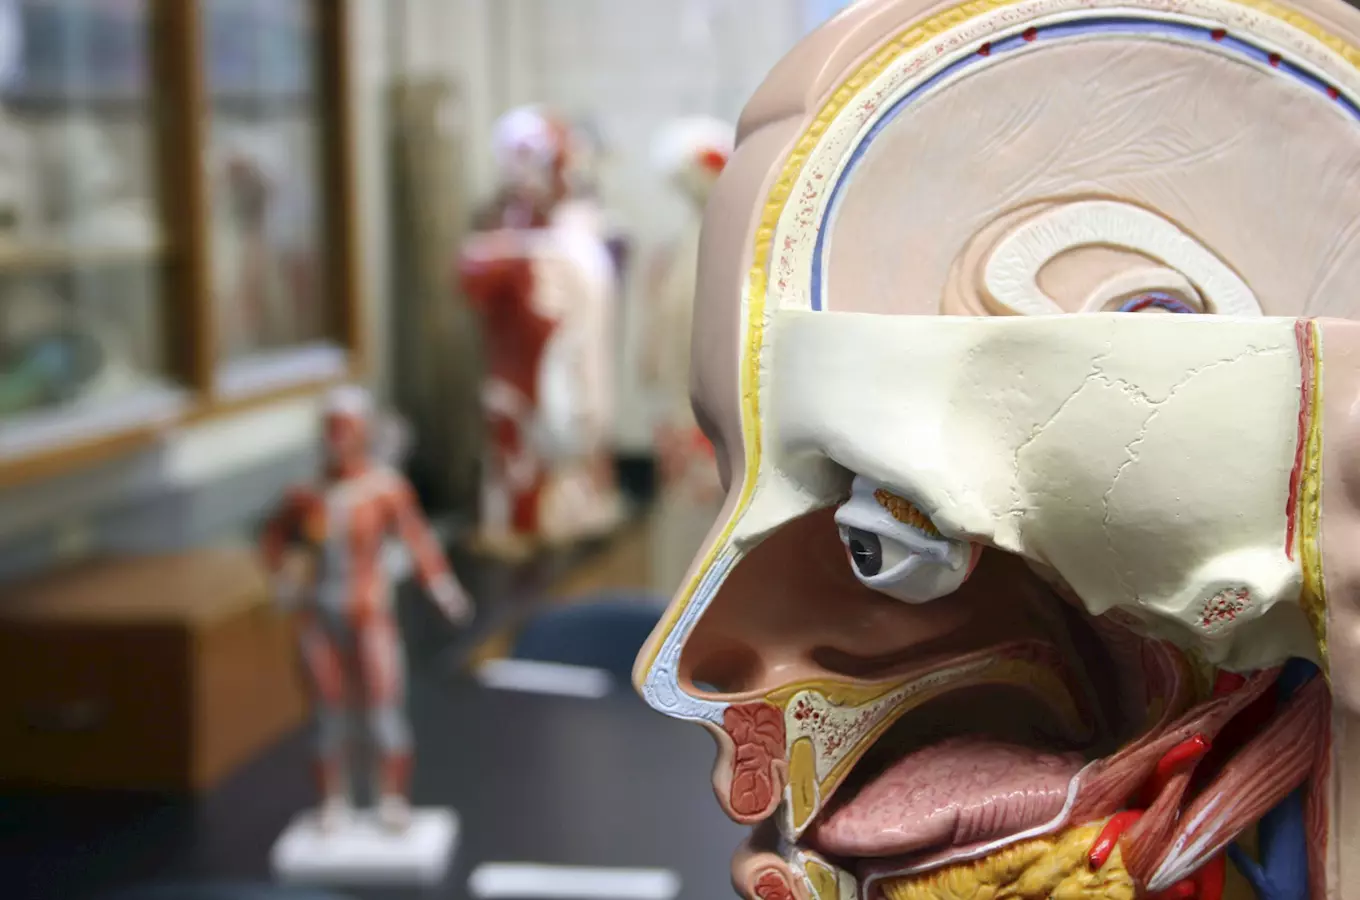 Poodhalte tajmství lidského tela na výstave Mendelova muzea